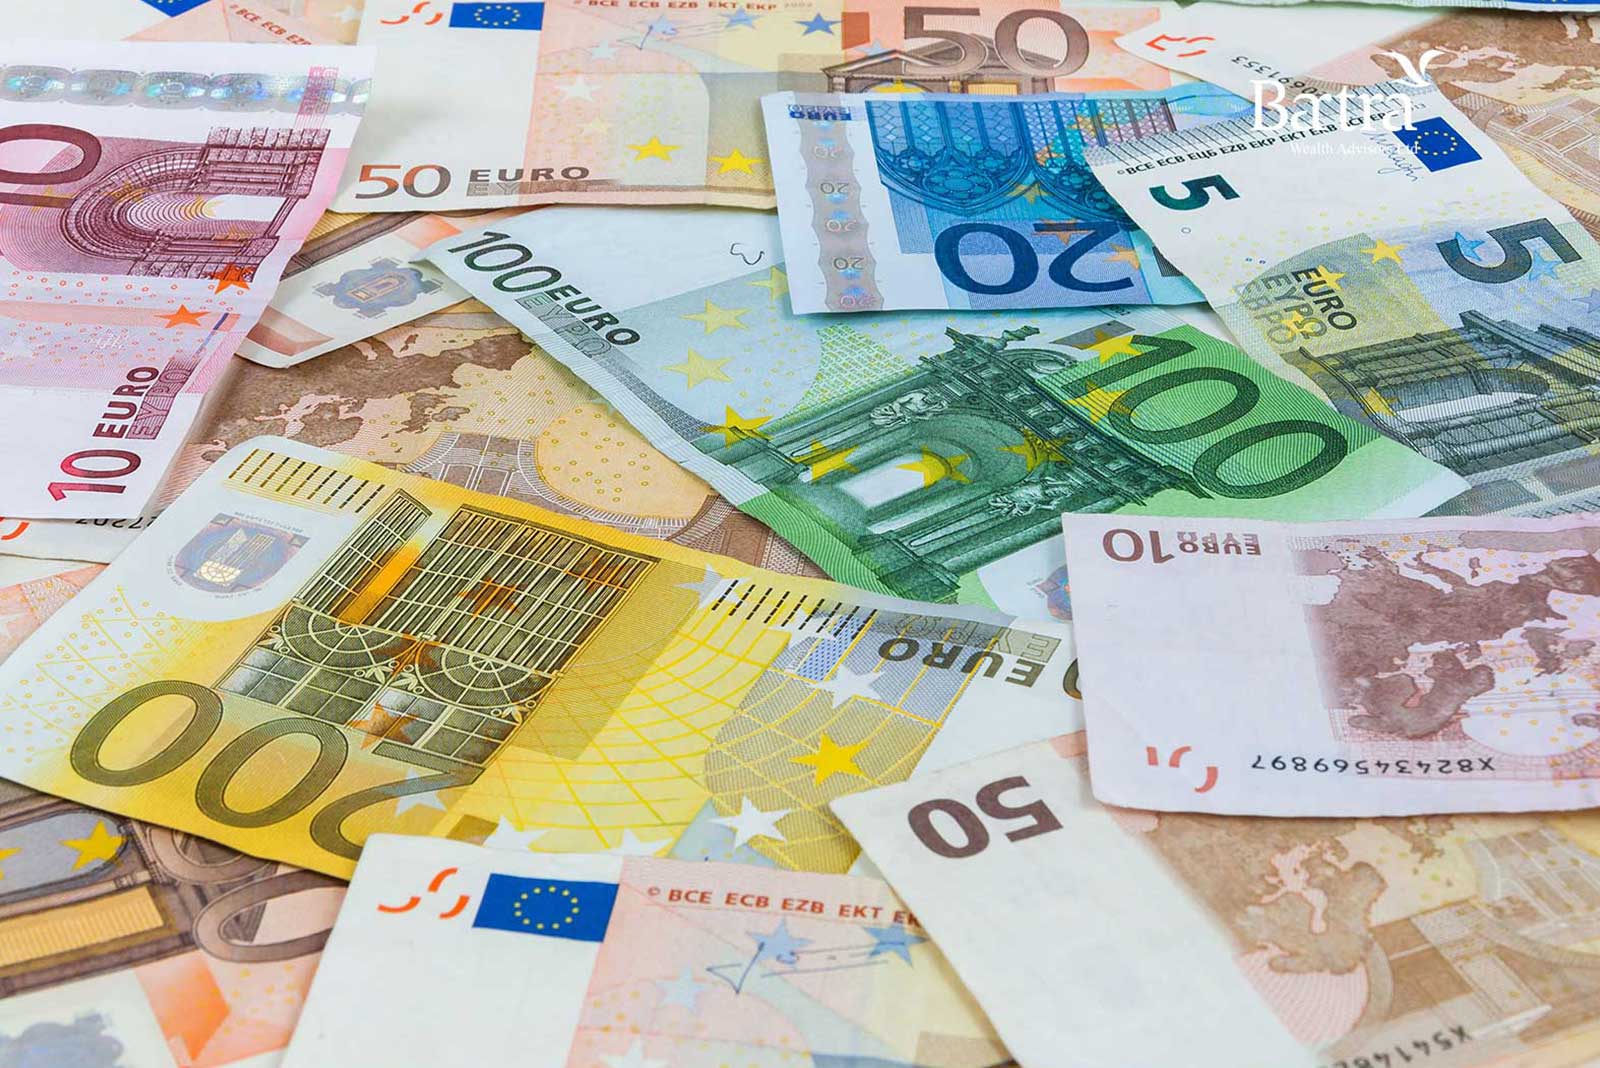 聰明的 IIP 投資者 – 現在是買入歐元的最佳時機？